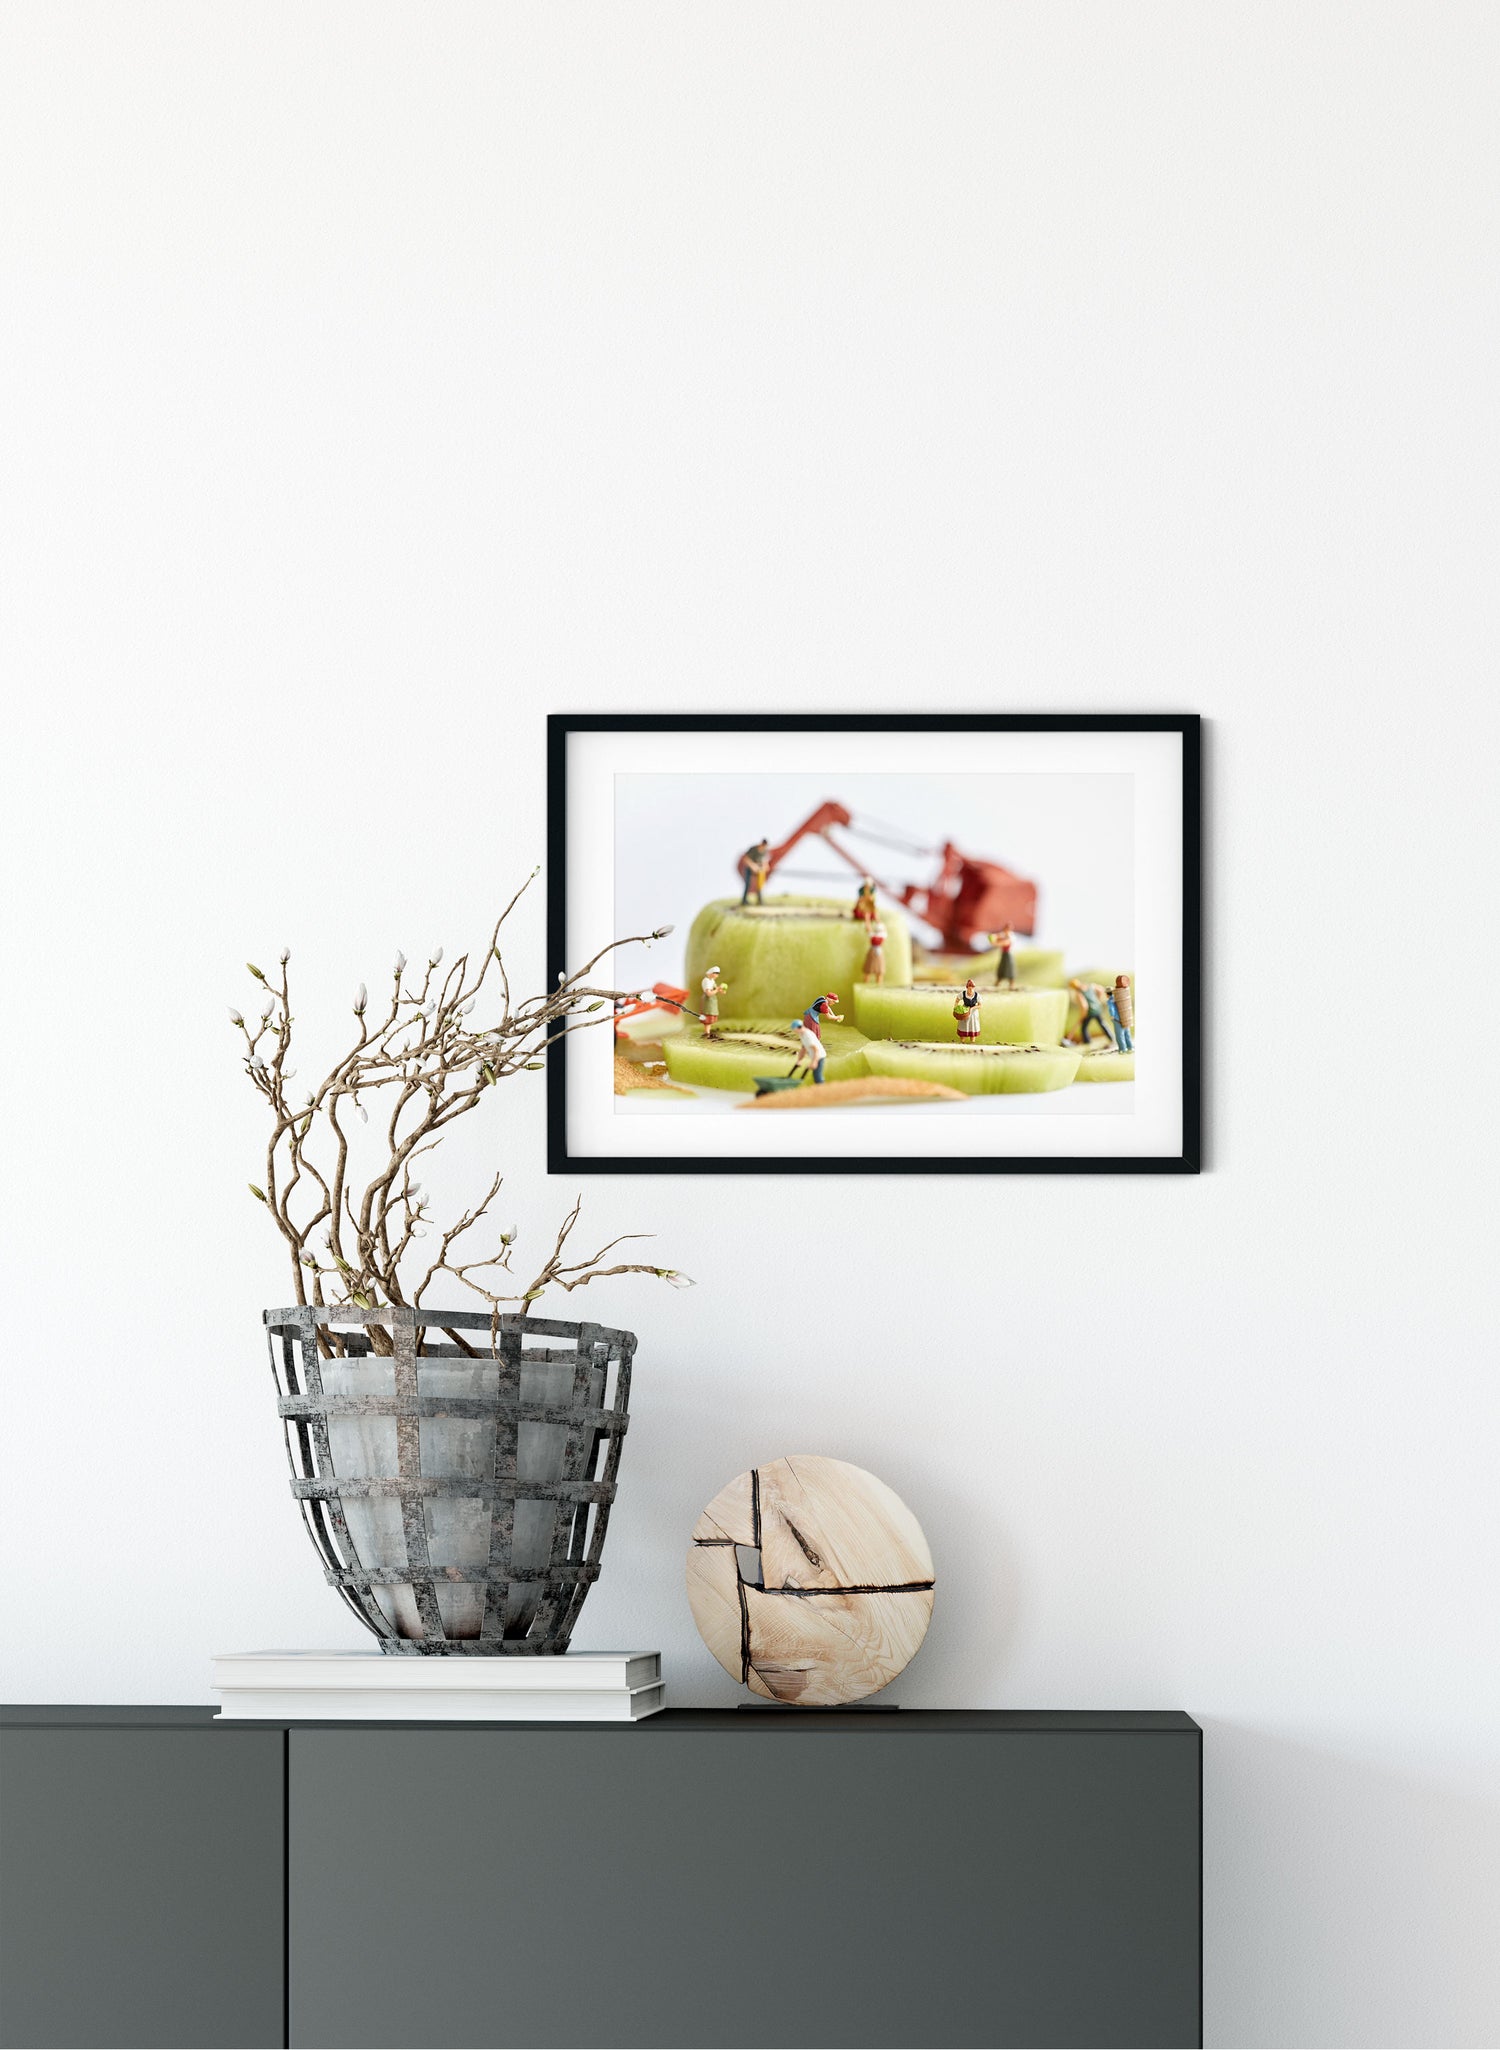 Kiwifruit Harvest - Photographic Print